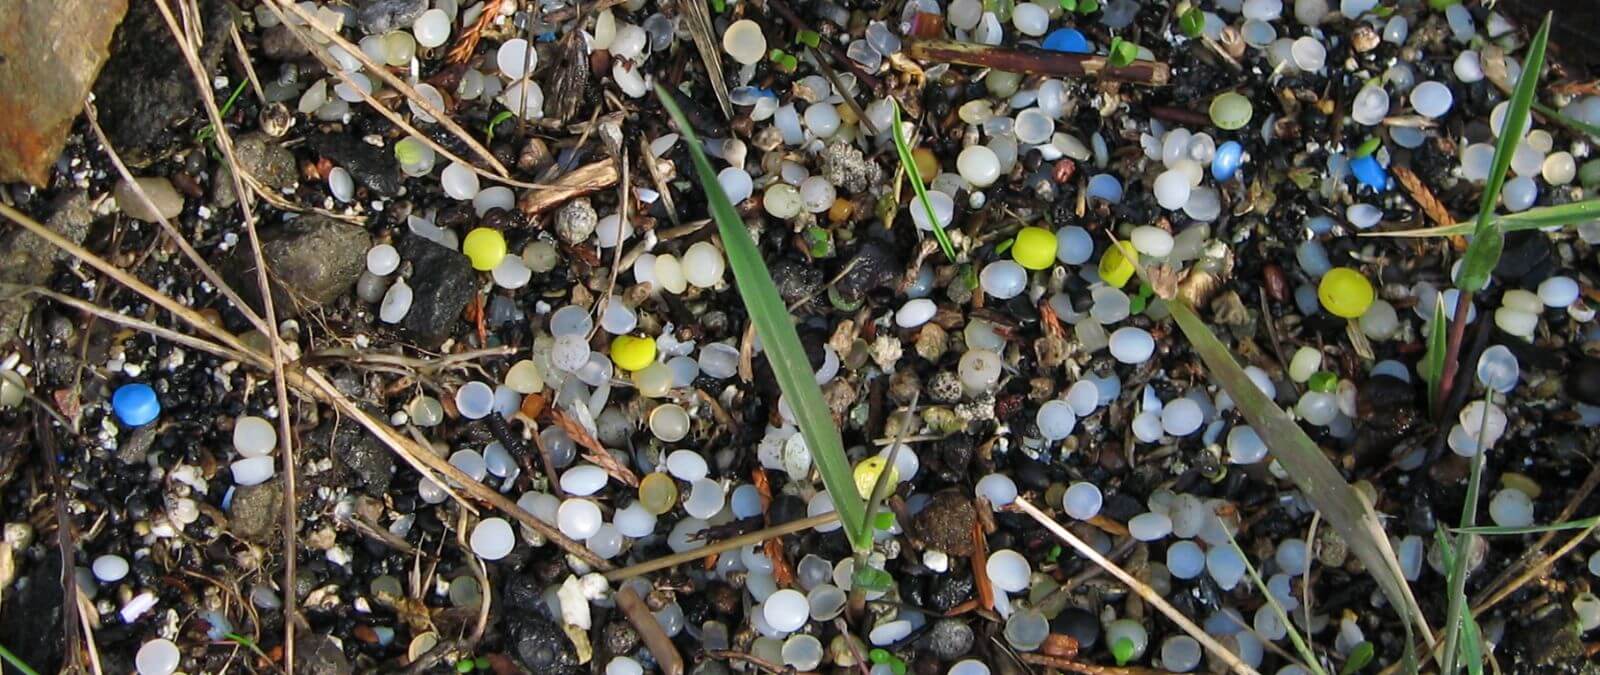 Qué son los pellets de plástico y cuáles son sus impactos en el medioambiente